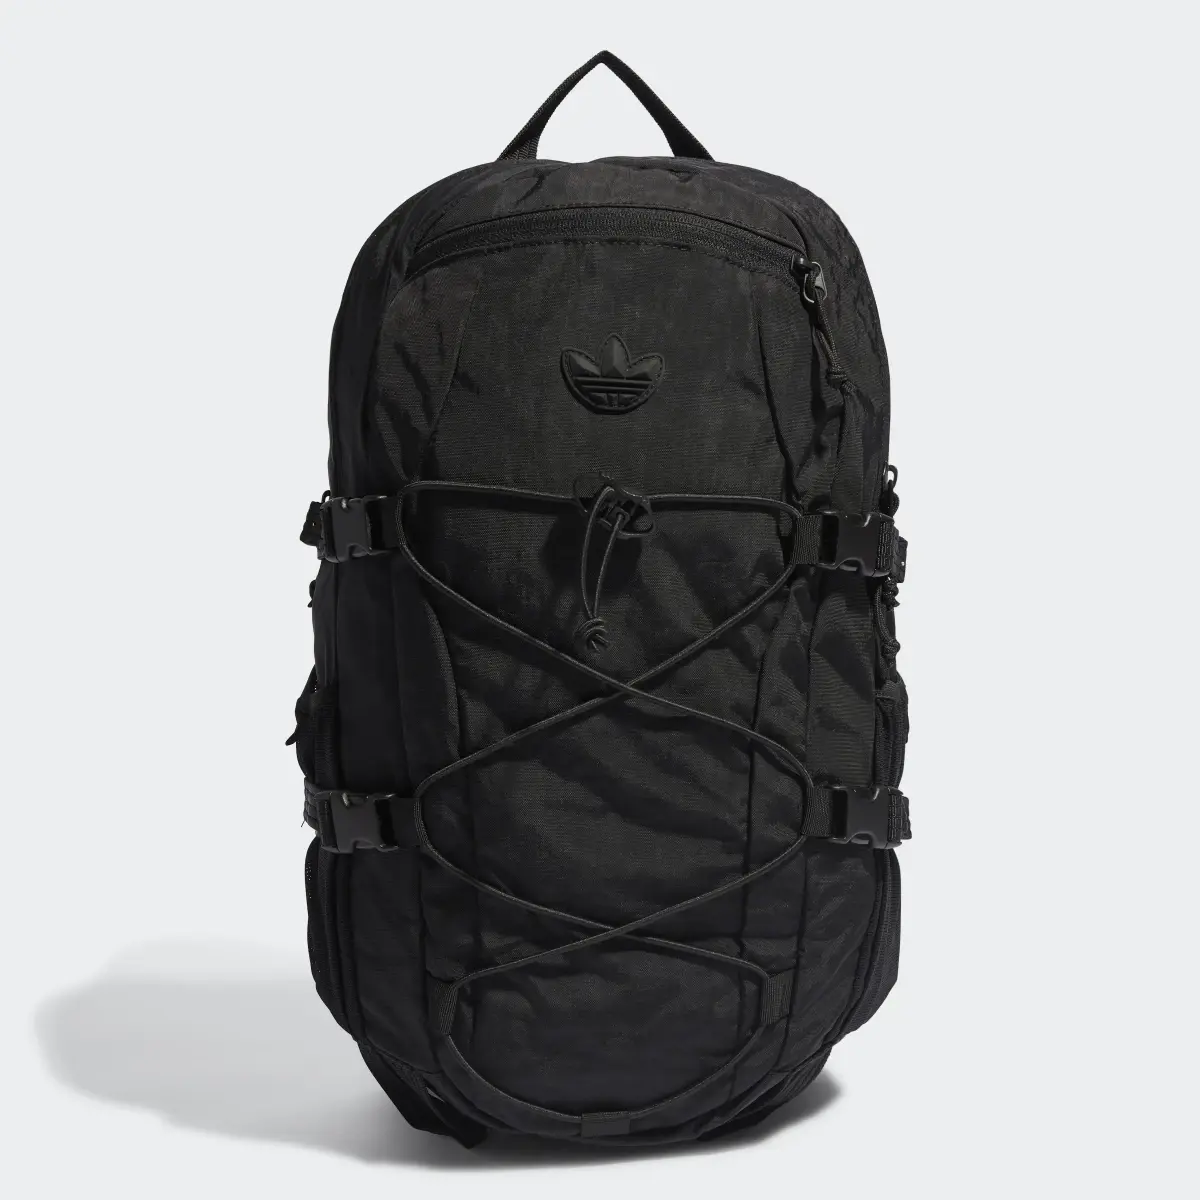 Adidas Adventure Backpack. 2